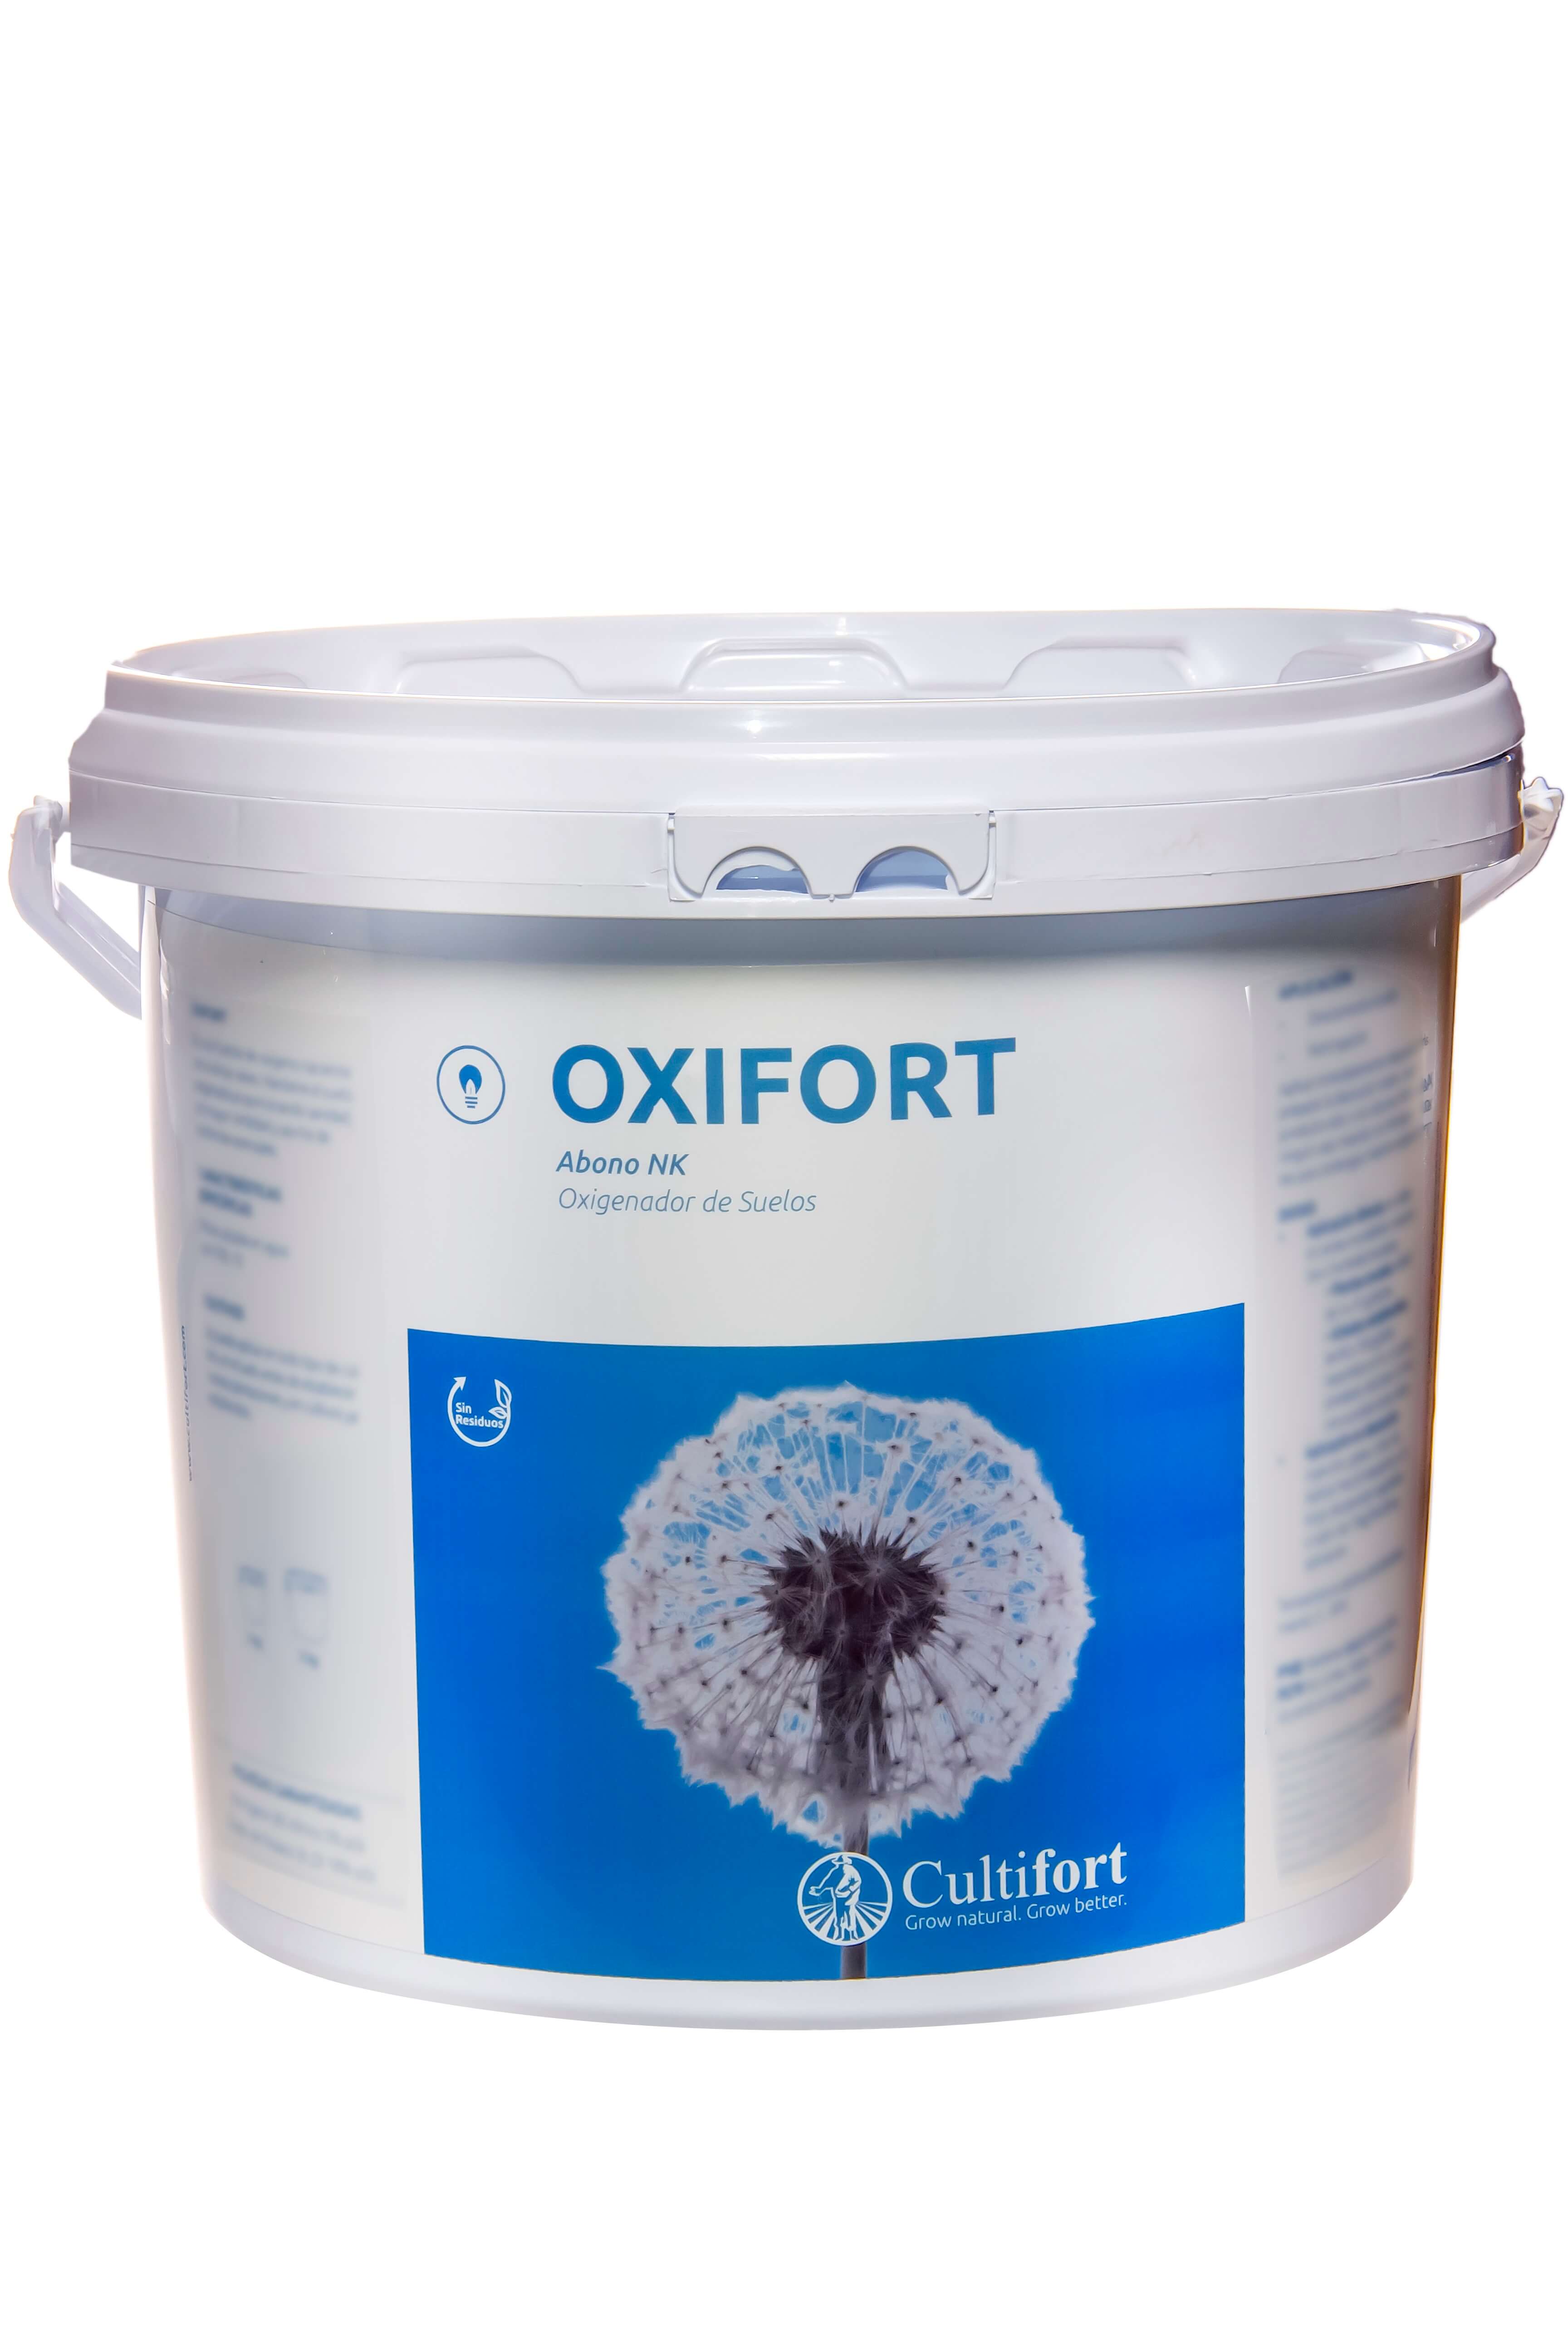 Oxifort